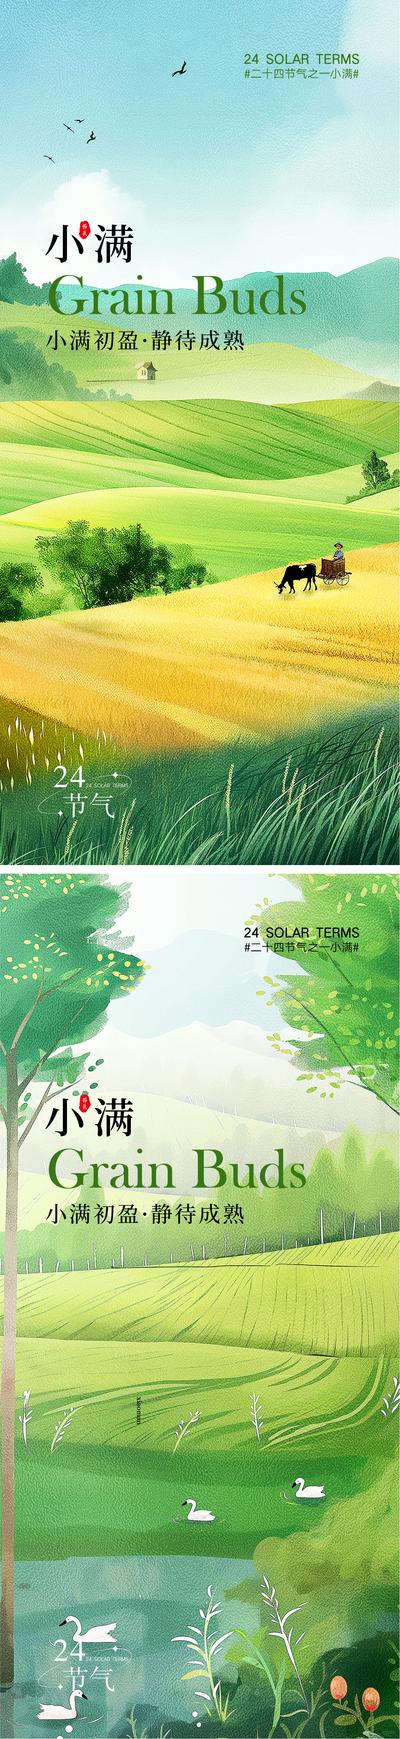 南门网 广告 海报 地产 小满 二十四节气 芒种 麦穗 稻田 梯田 农作 自然